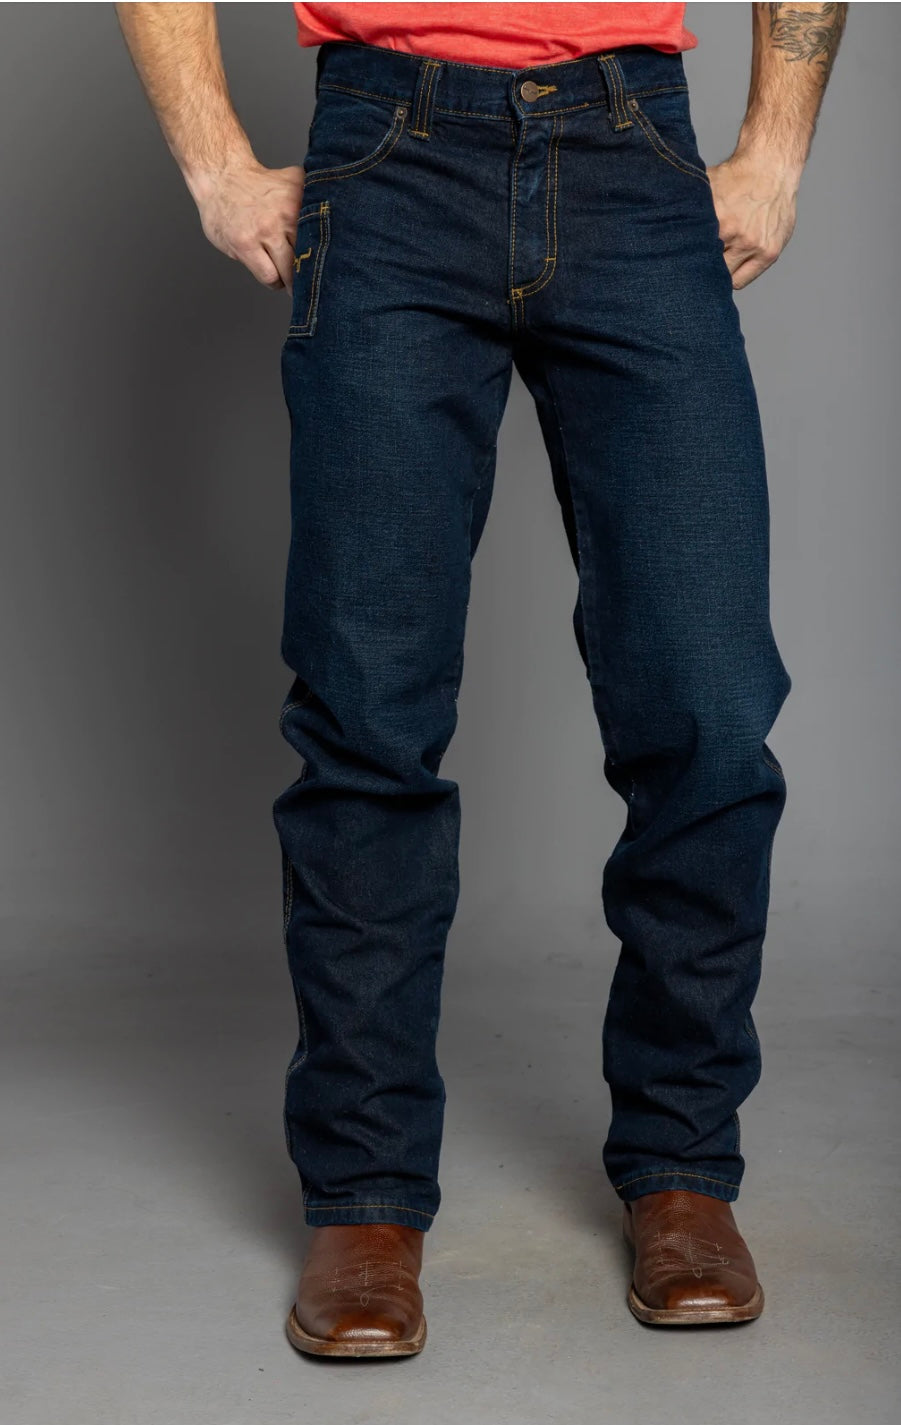 Kimes Men's "Watson" Jeans